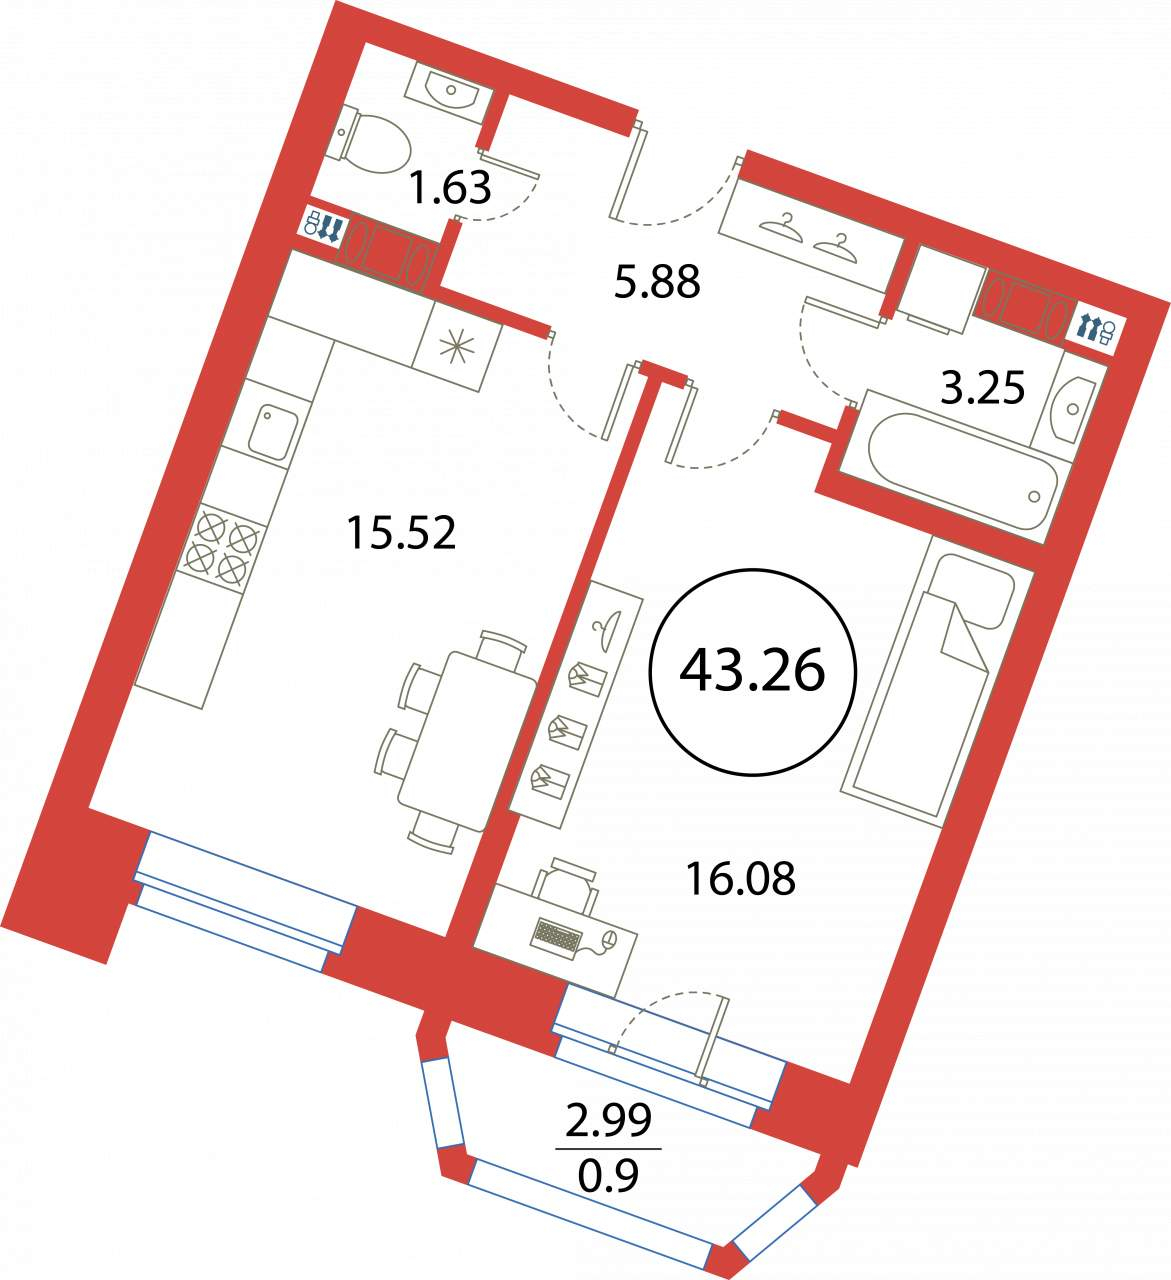 Квартира, 43.26 м²